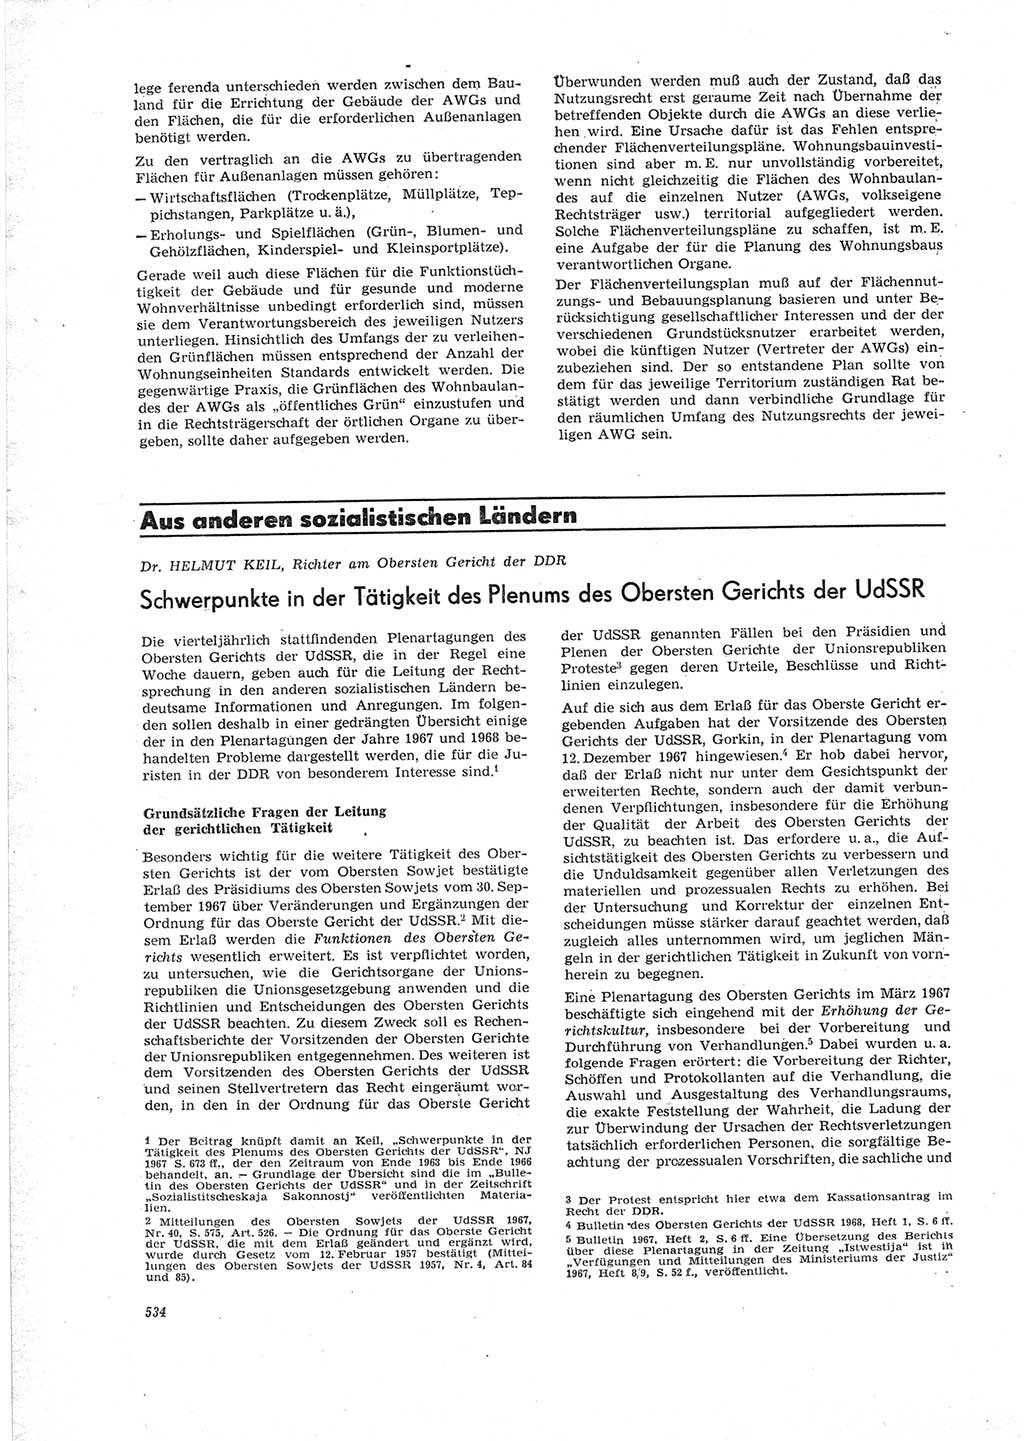 Neue Justiz (NJ), Zeitschrift für Recht und Rechtswissenschaft [Deutsche Demokratische Republik (DDR)], 23. Jahrgang 1969, Seite 534 (NJ DDR 1969, S. 534)